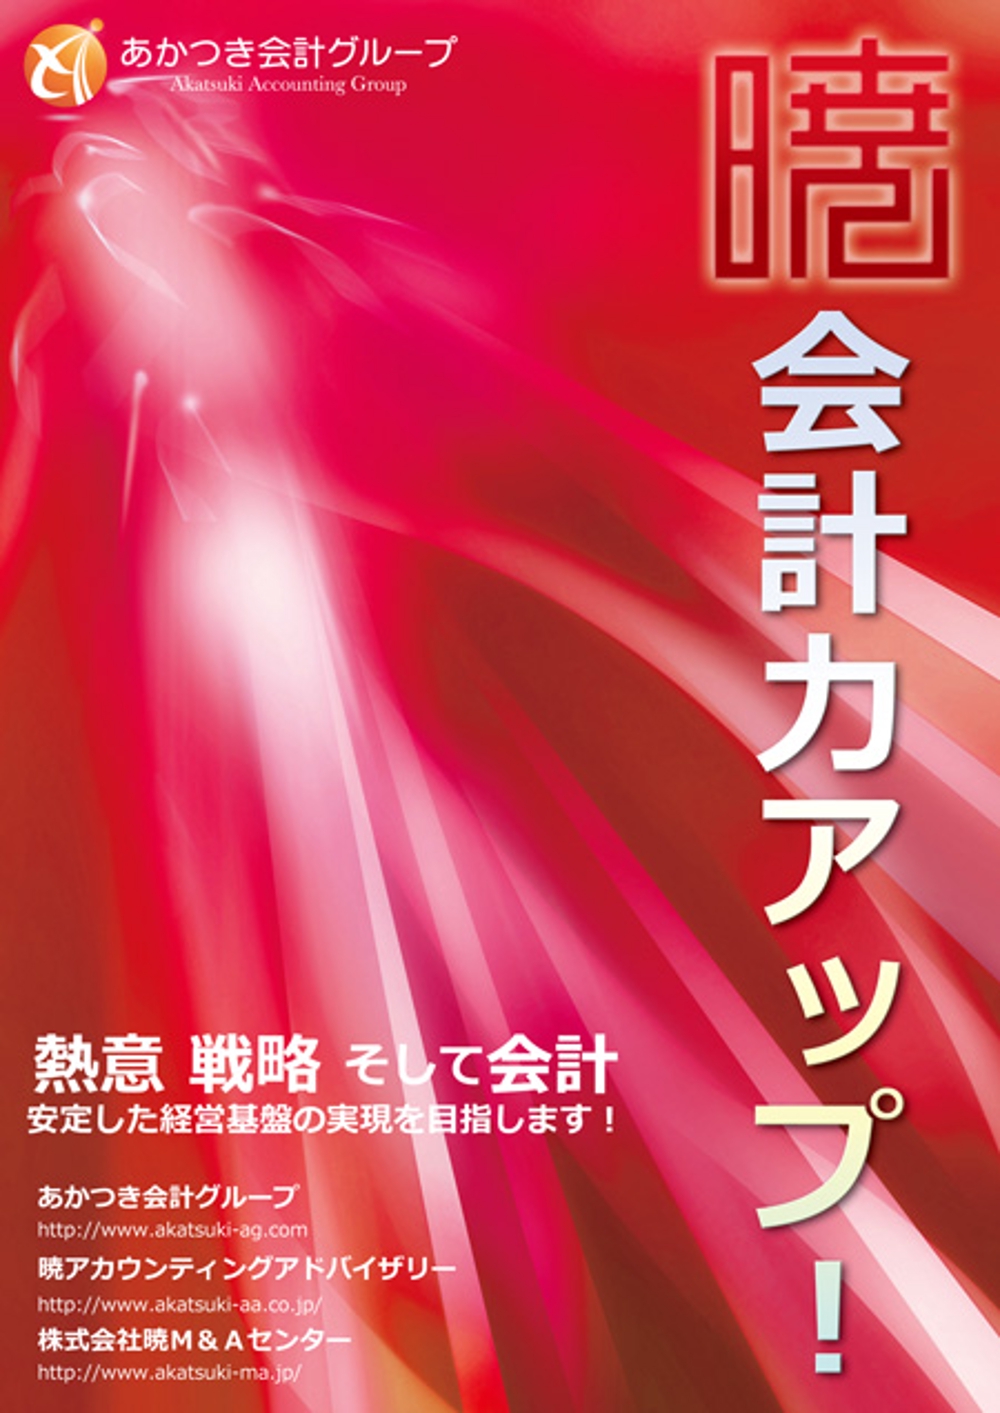 akatsuki-poster.jpg